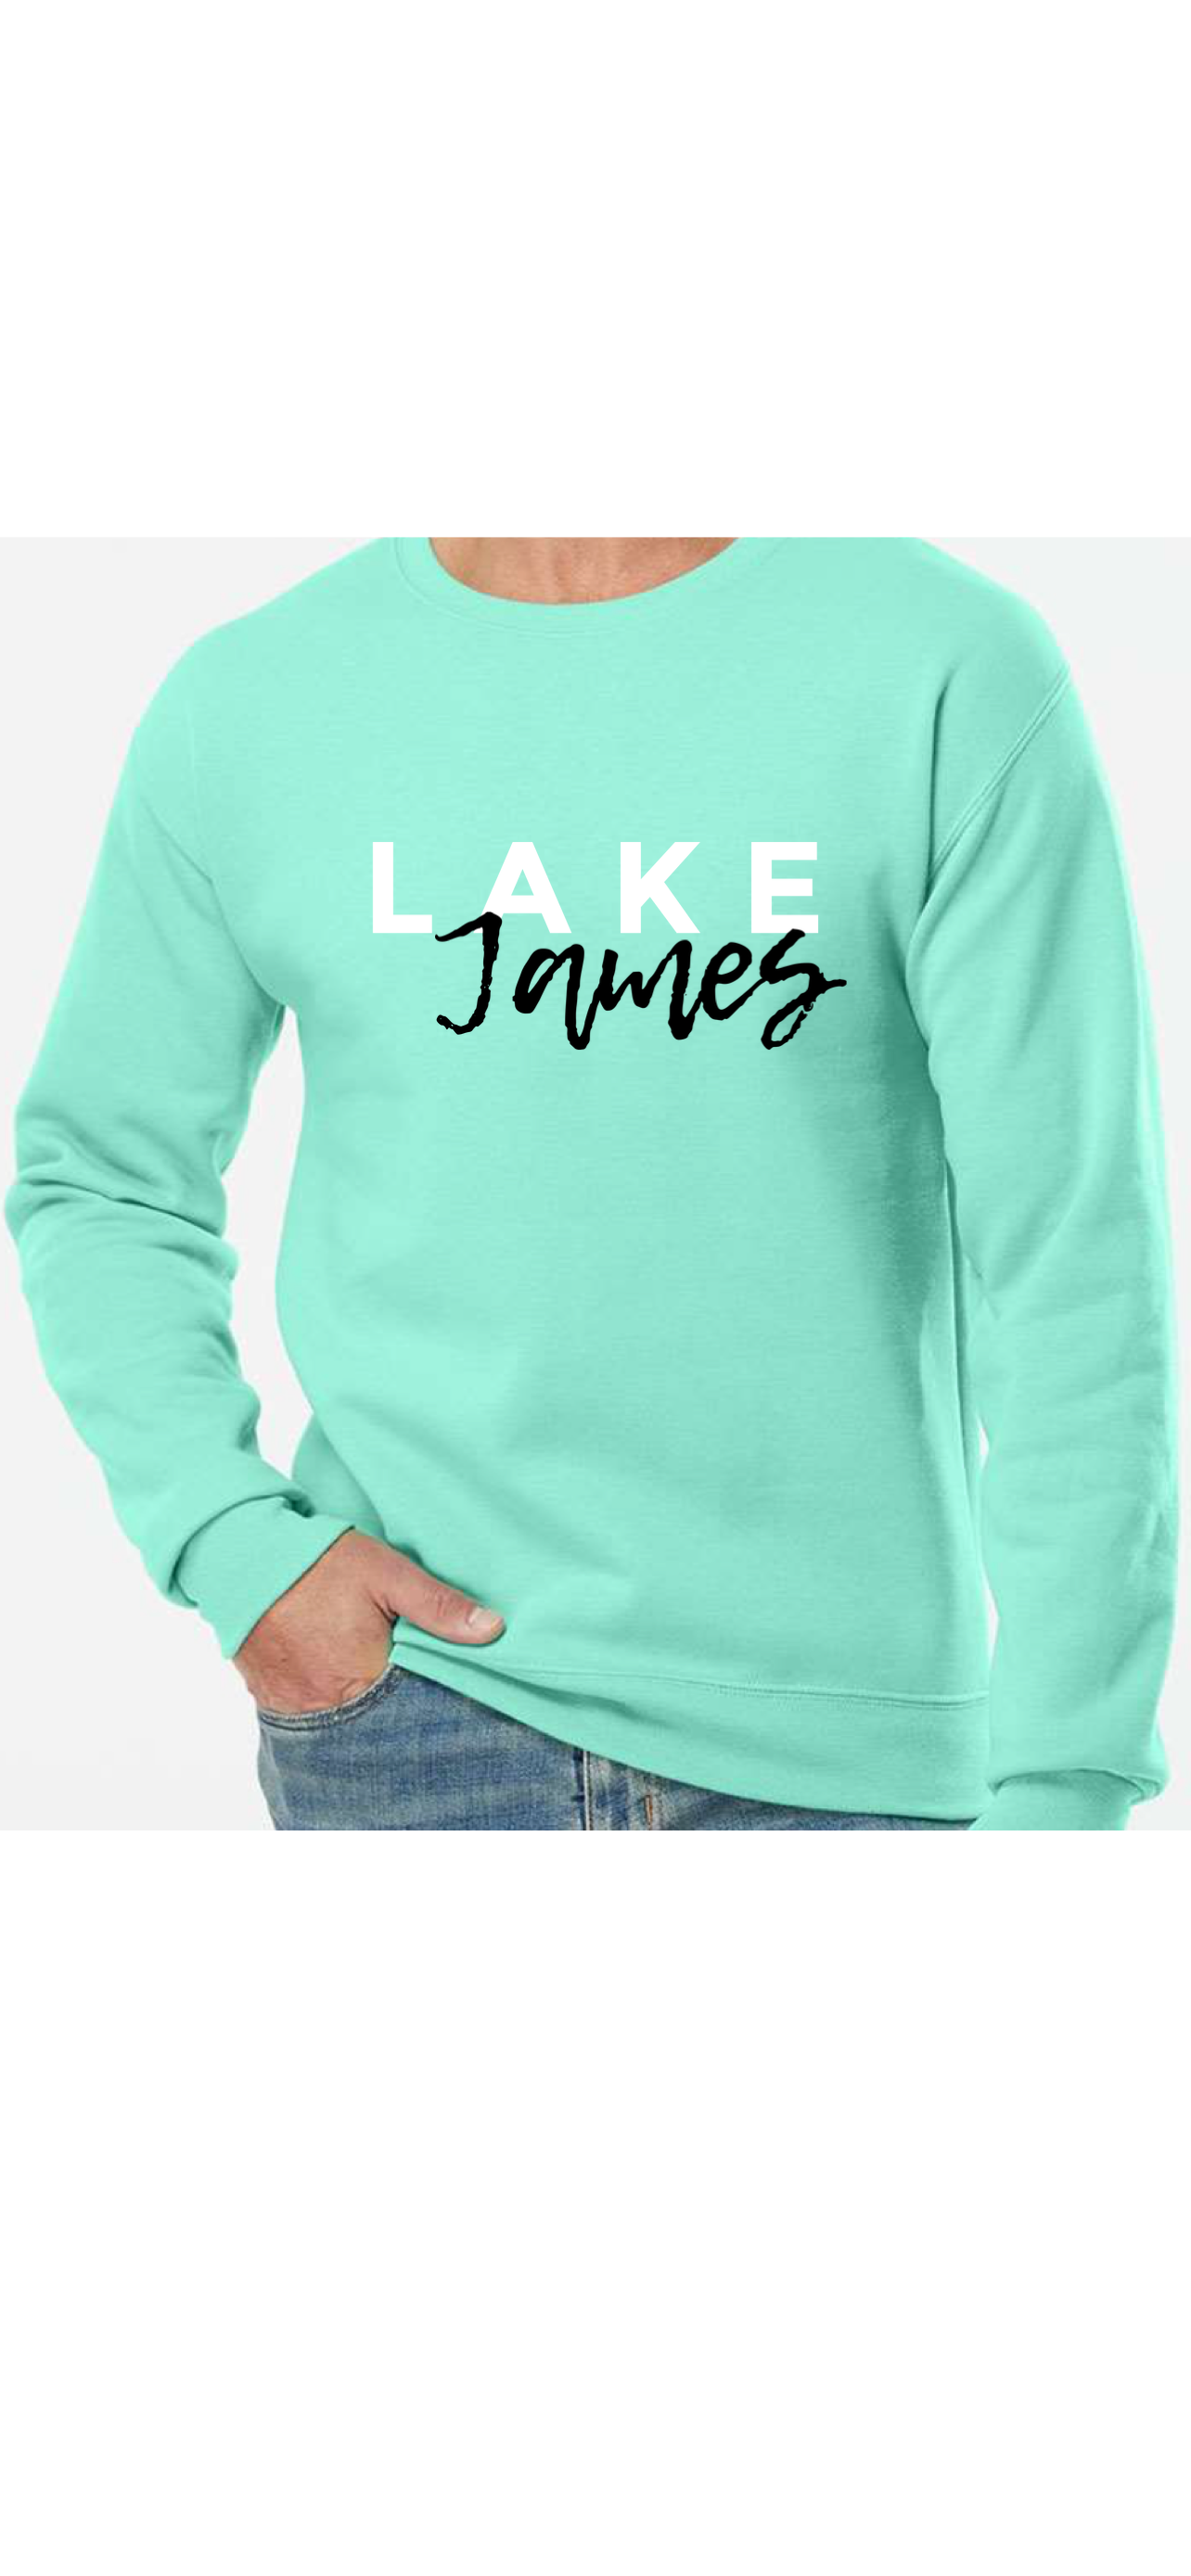 Lake day| Lake life shirt| Lake Life shirt| Life at the lake tee| Lake Shirt